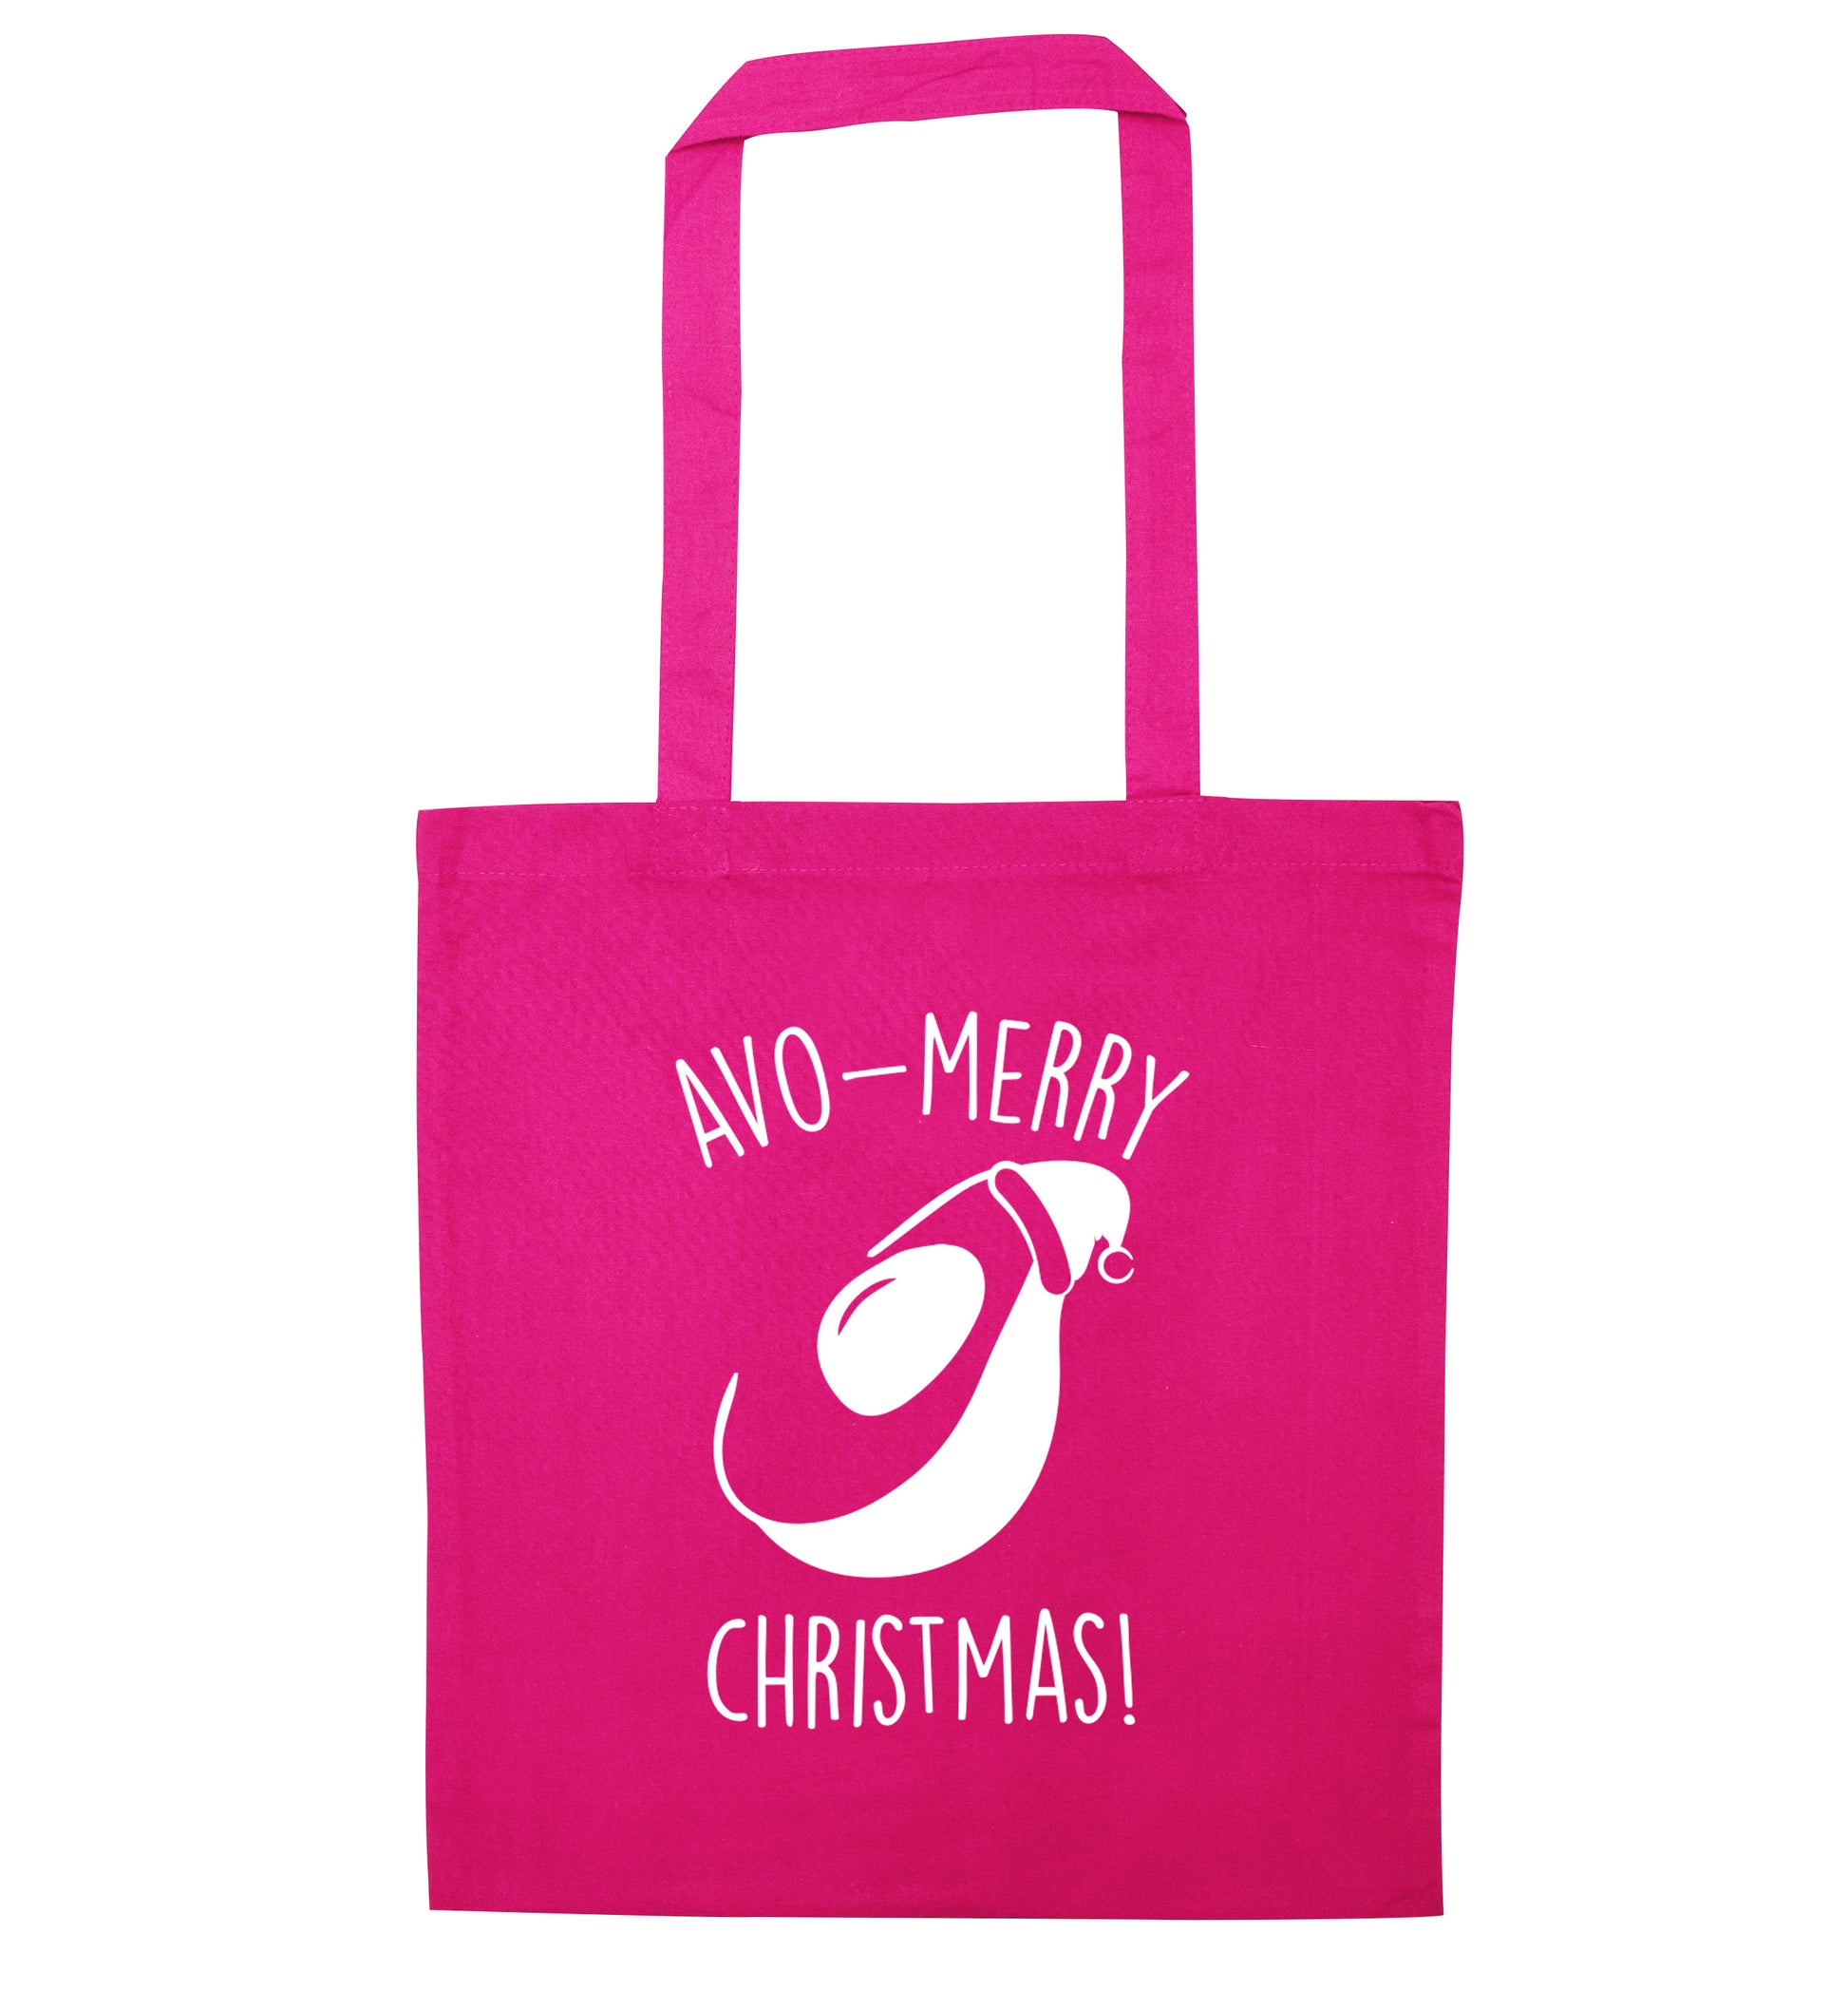 Avo-Merry Christmas pink tote bag